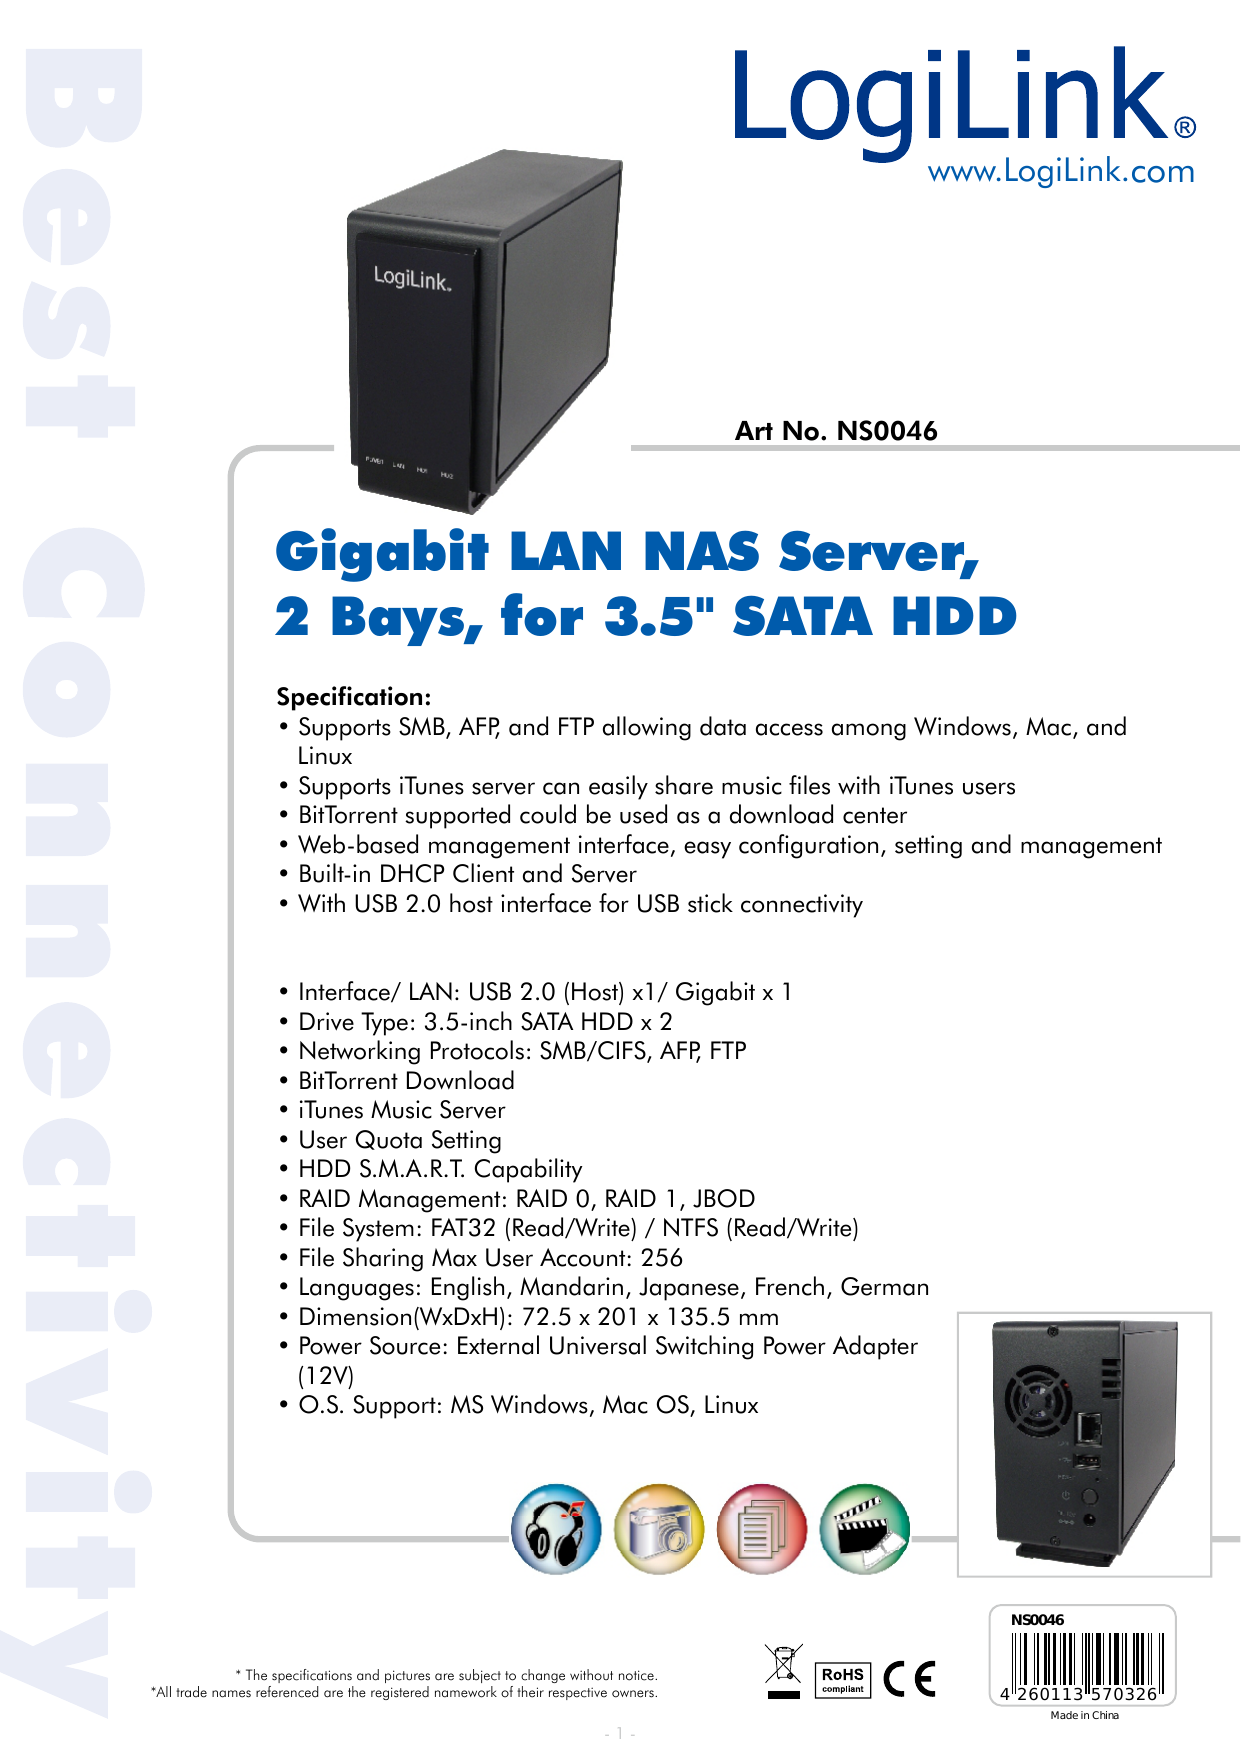 Gigabit LAN NAS Server, 2 Bays, for 3.5